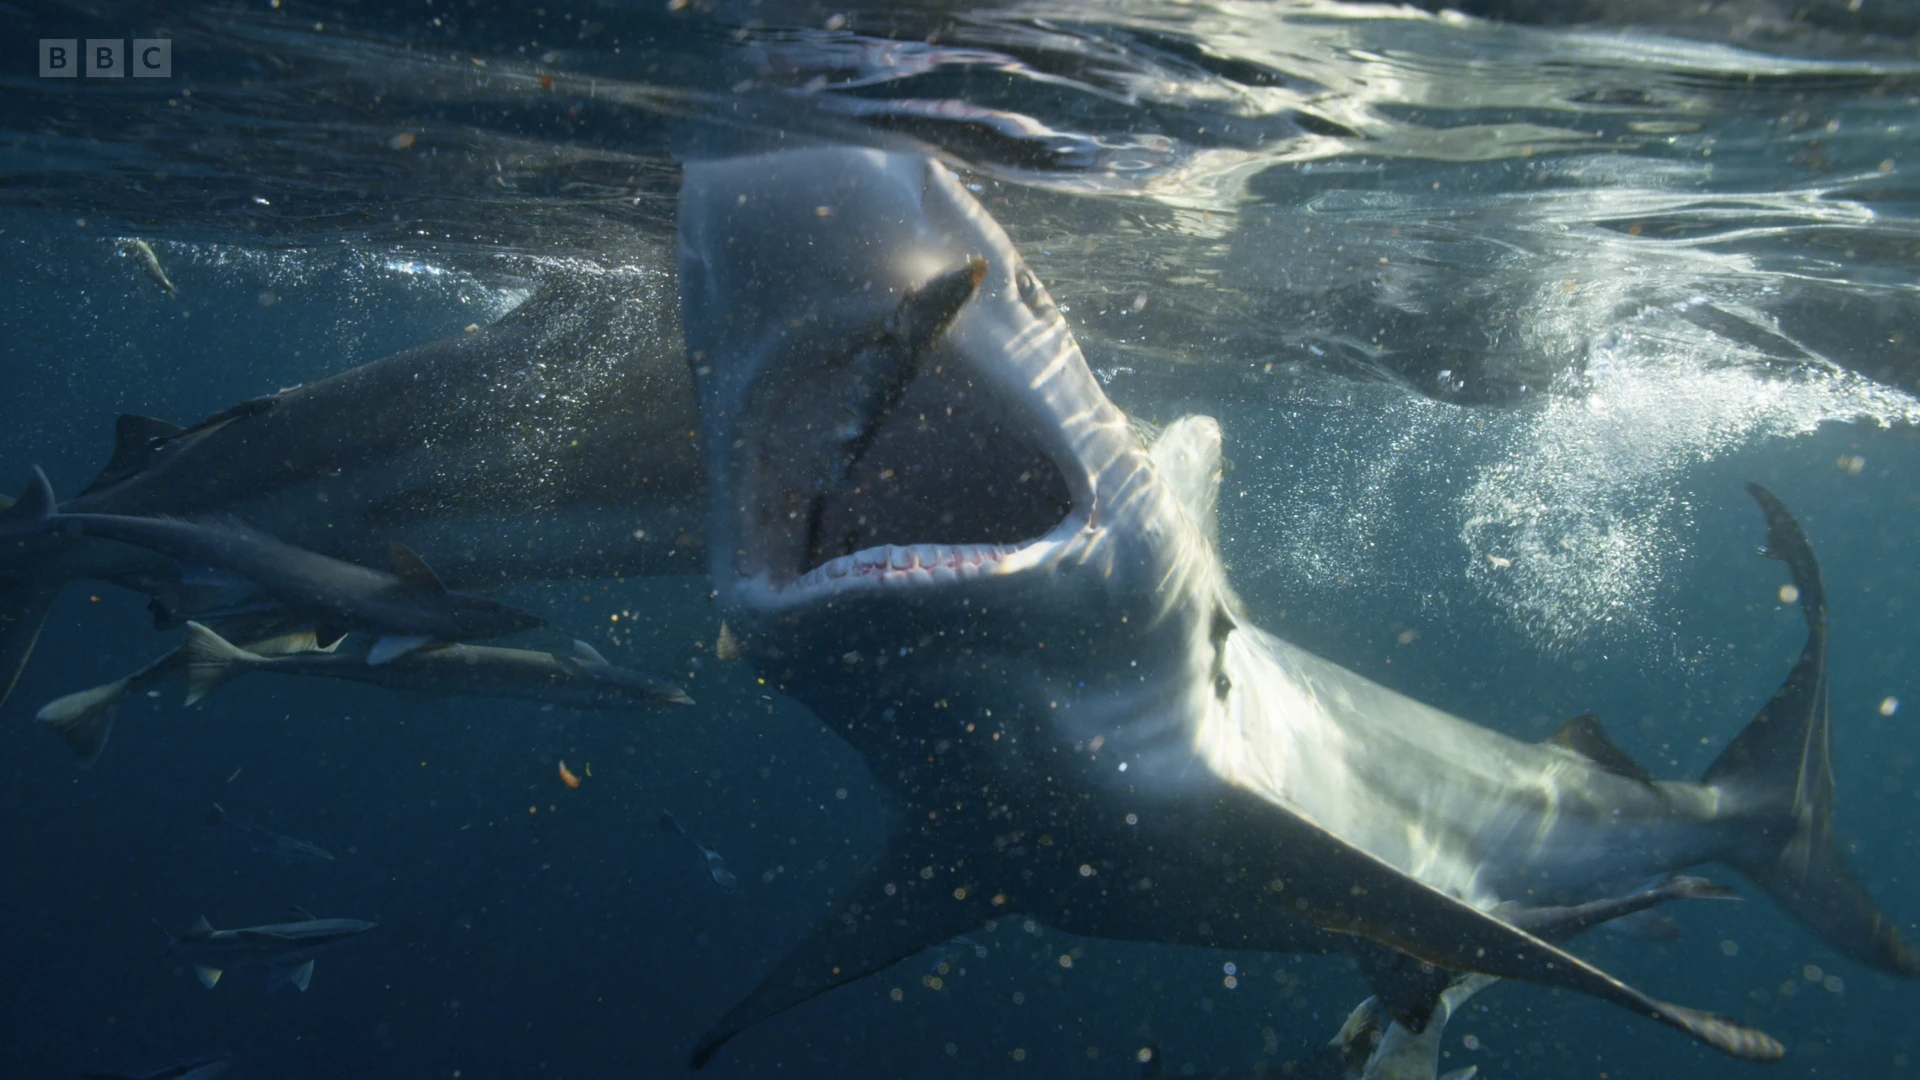 Copper shark (Carcharhinus brachyurus) as shown in A Perfect Planet - Humans